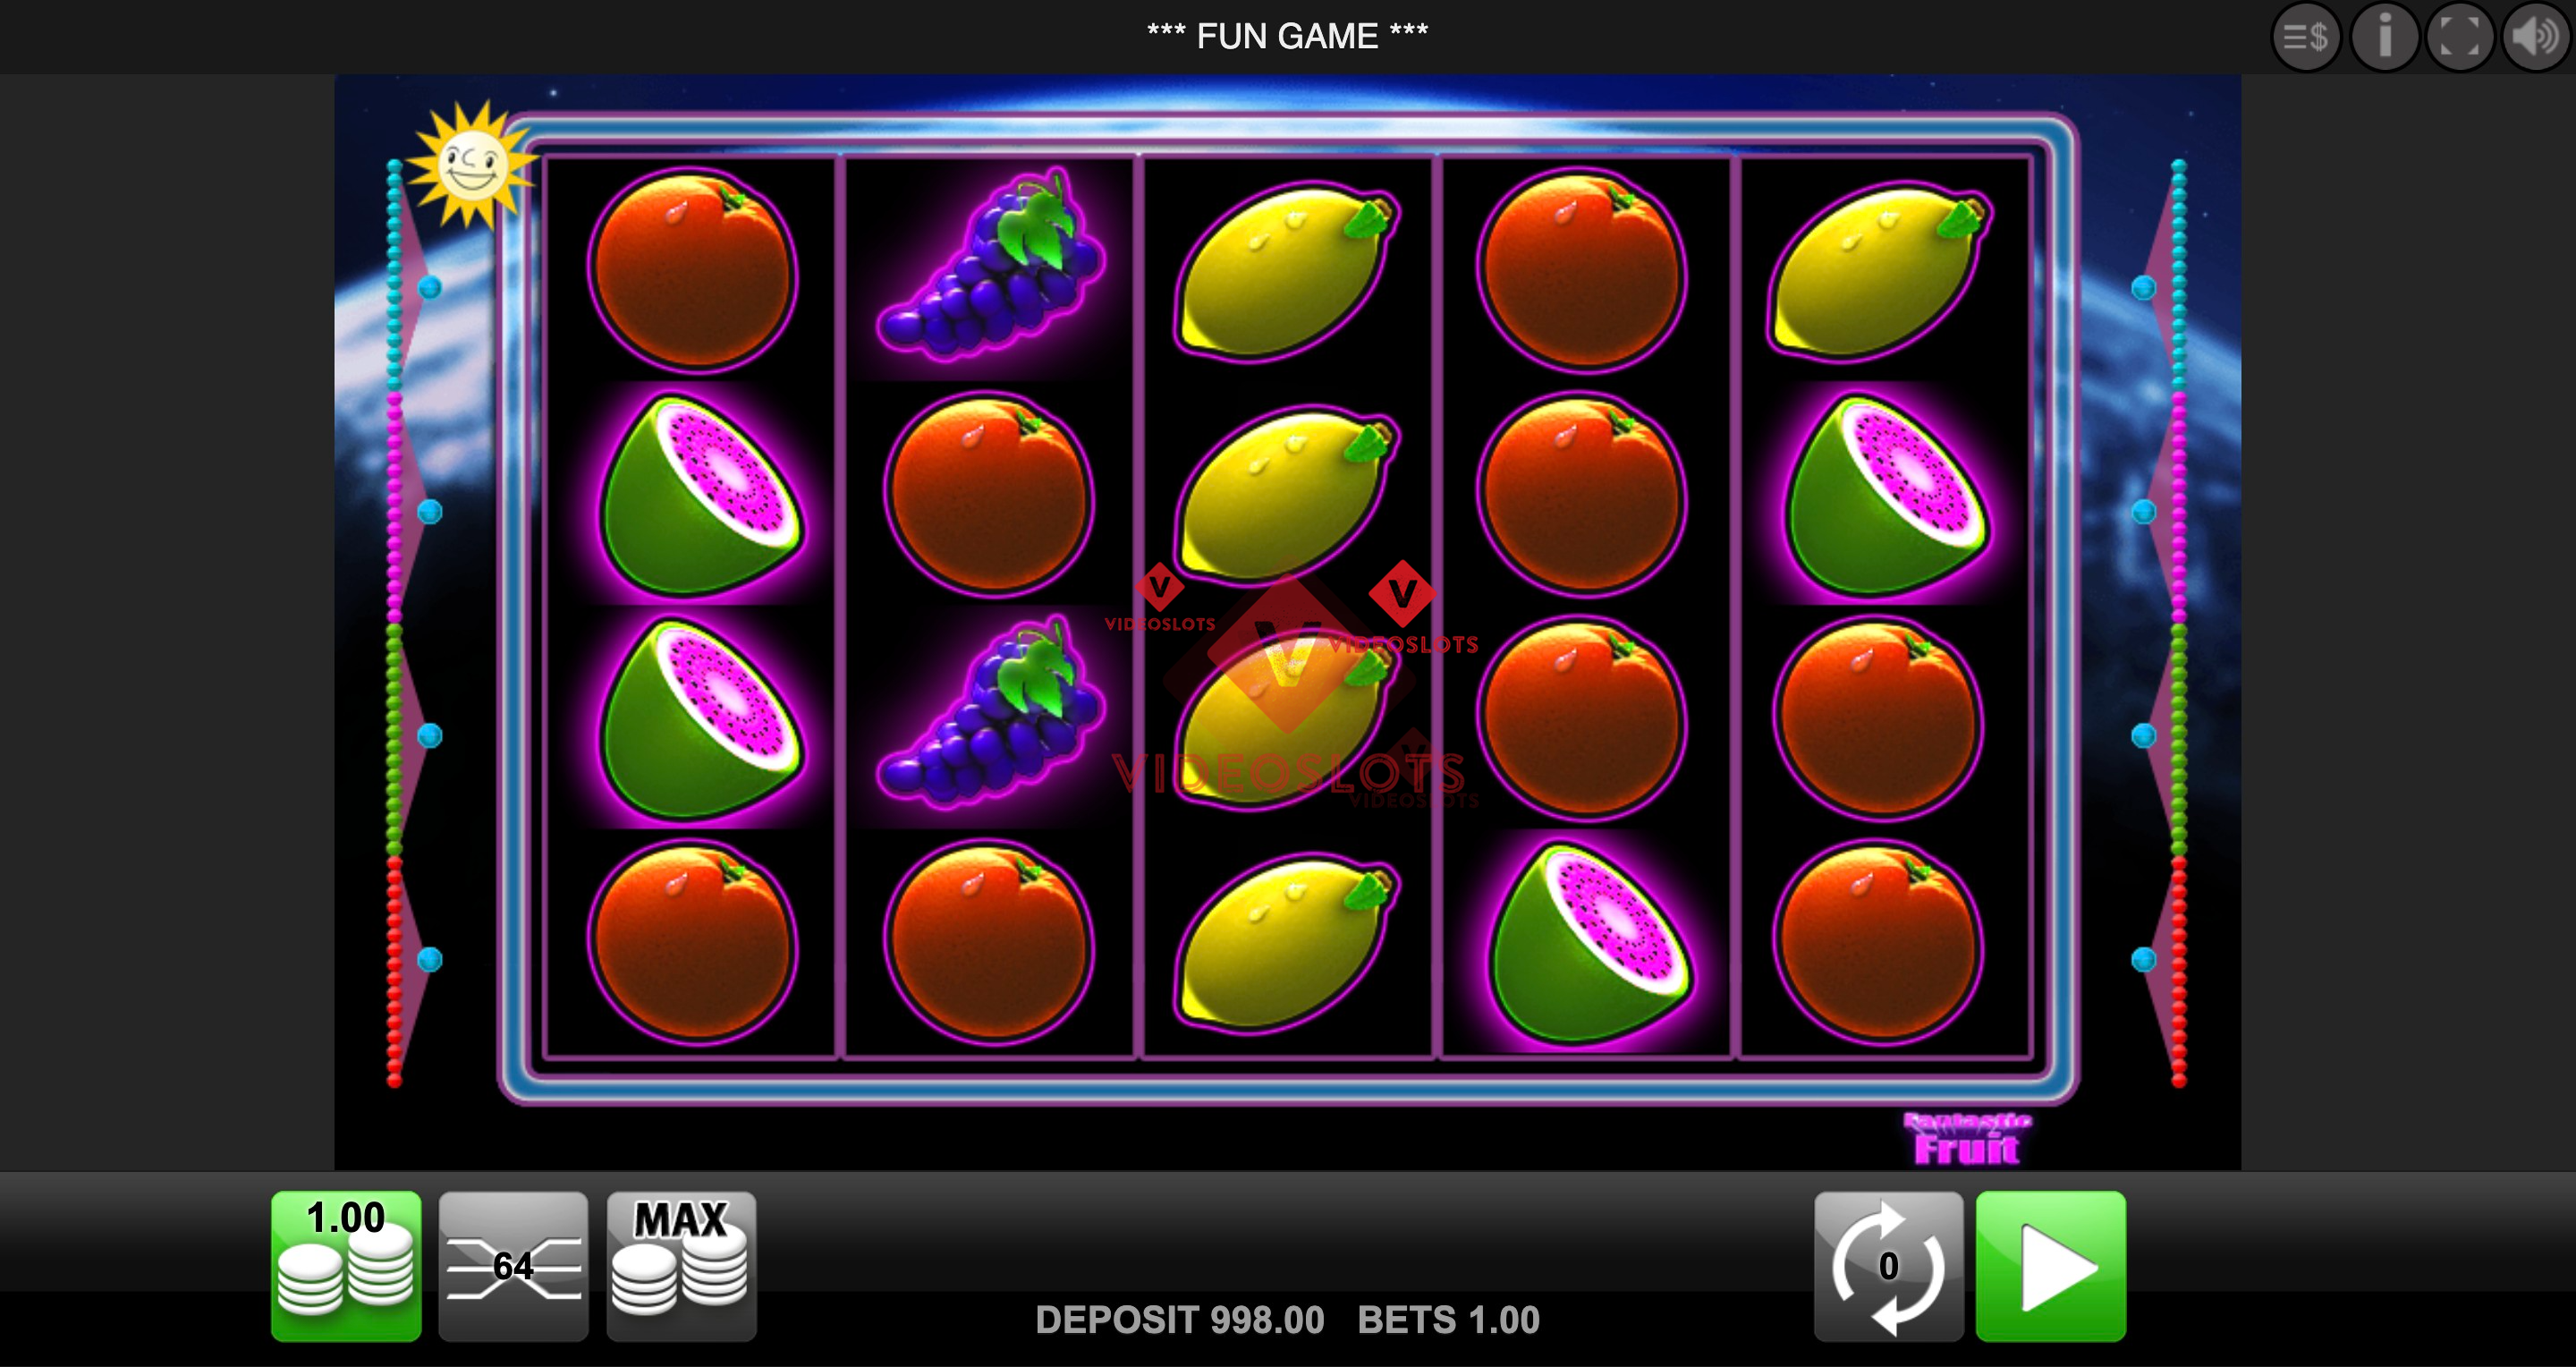 Base Game for Fantastic Fruit slot from Merkur